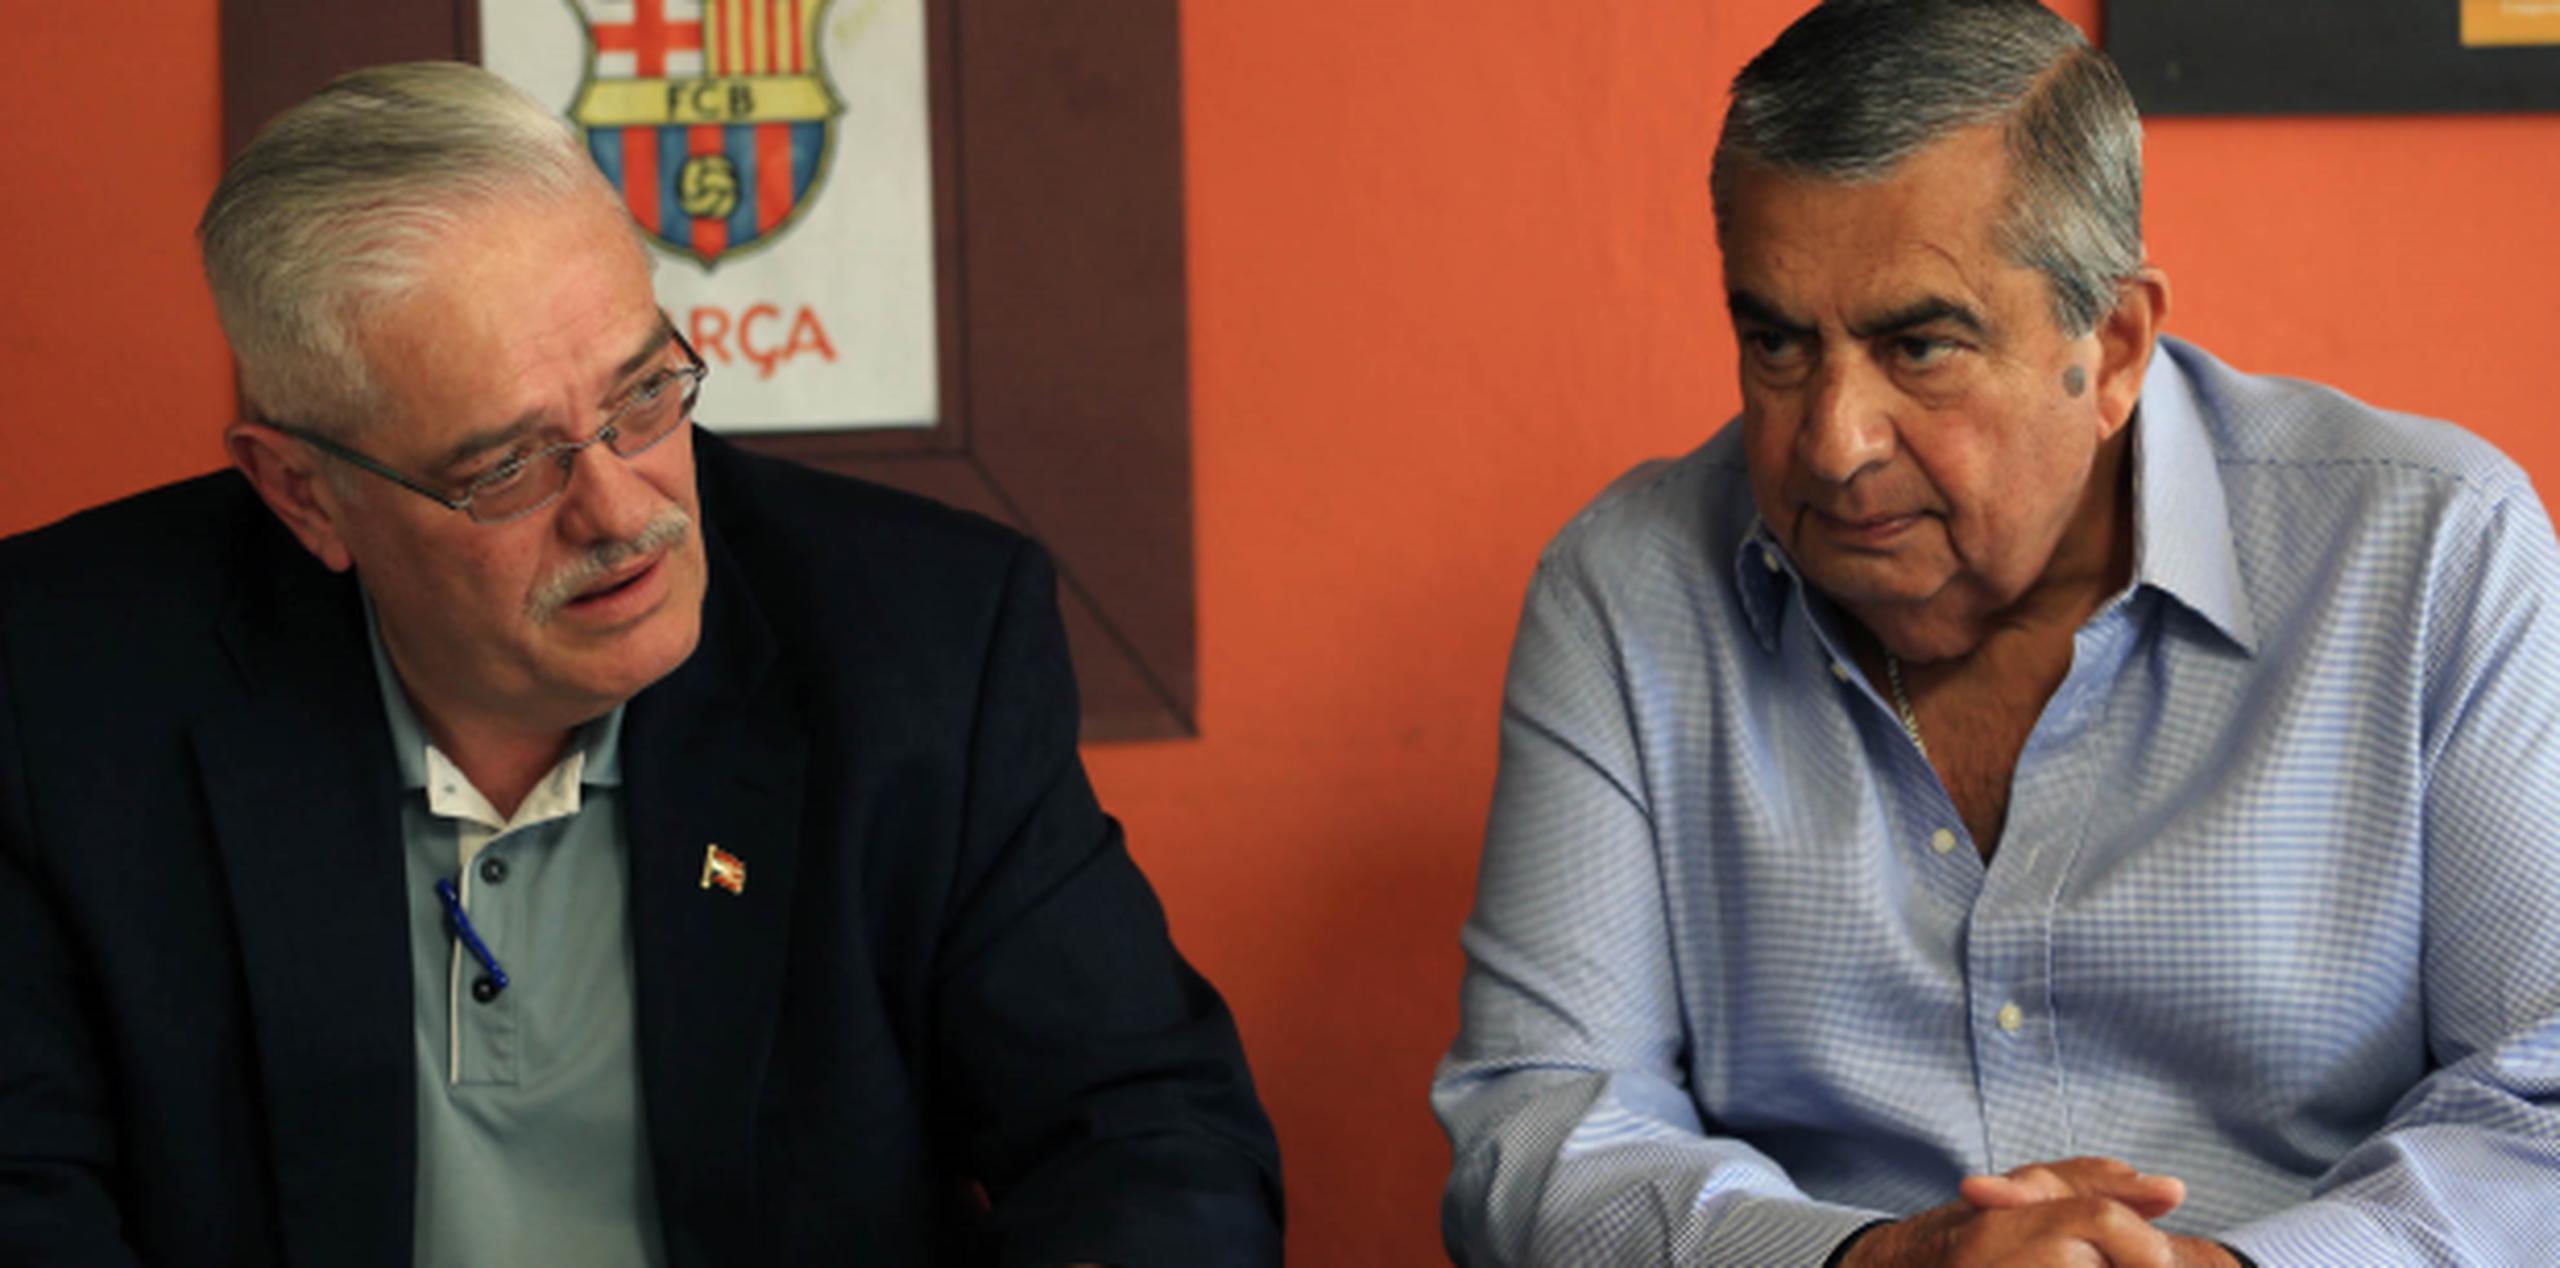 Luis Santini Gaudier y Carlos Gallisá criticaron que Rosselló Nevares quiera eliminar la Junta de la AEE. (david.vilafane@gfrmedia.com)